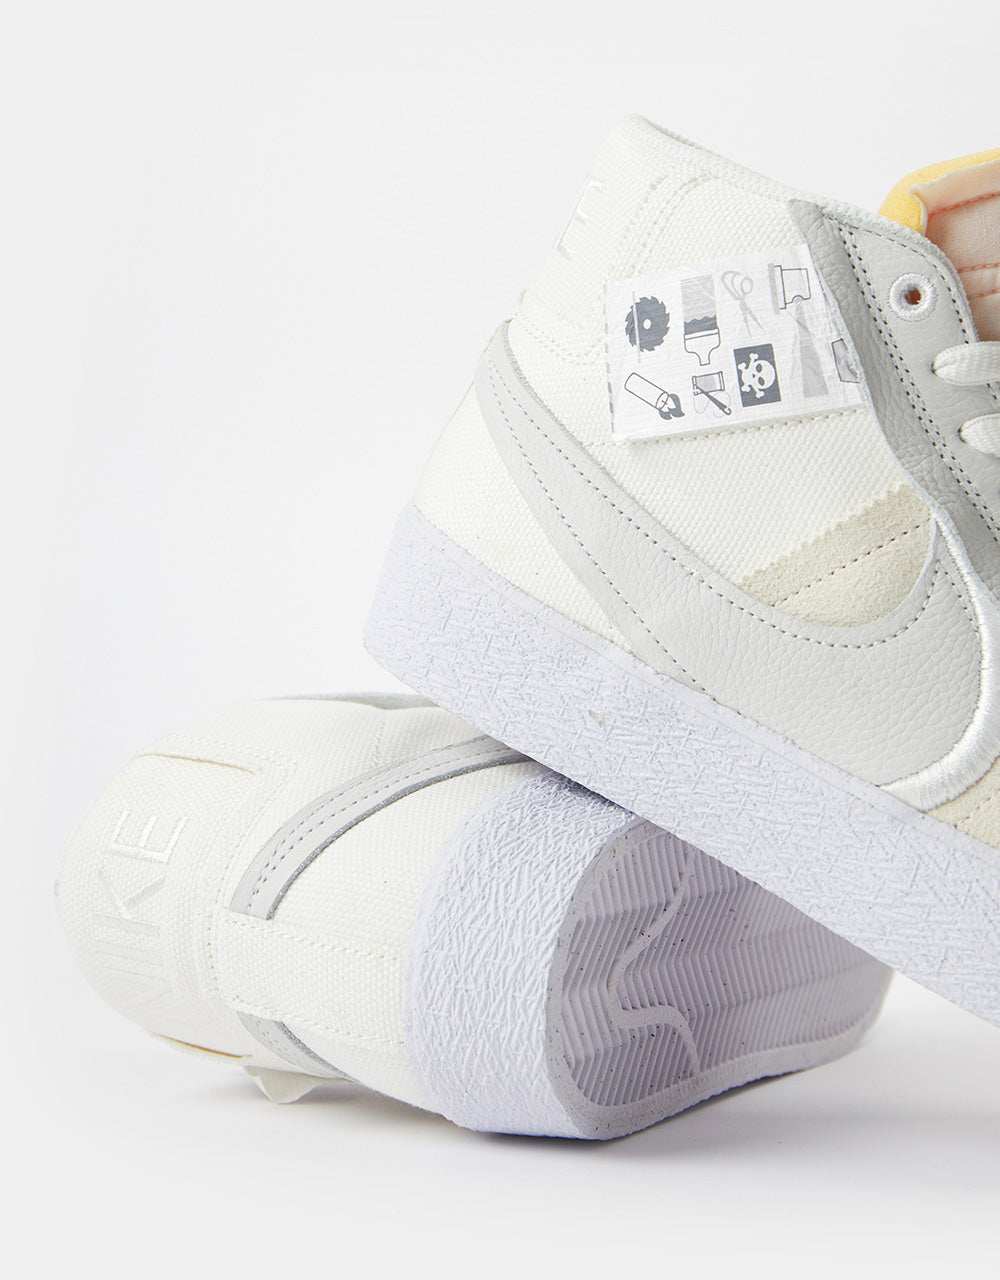 Nike SB Zoom Blazer Mid Premium Plus Skate Shoes - Summit White/Summit White